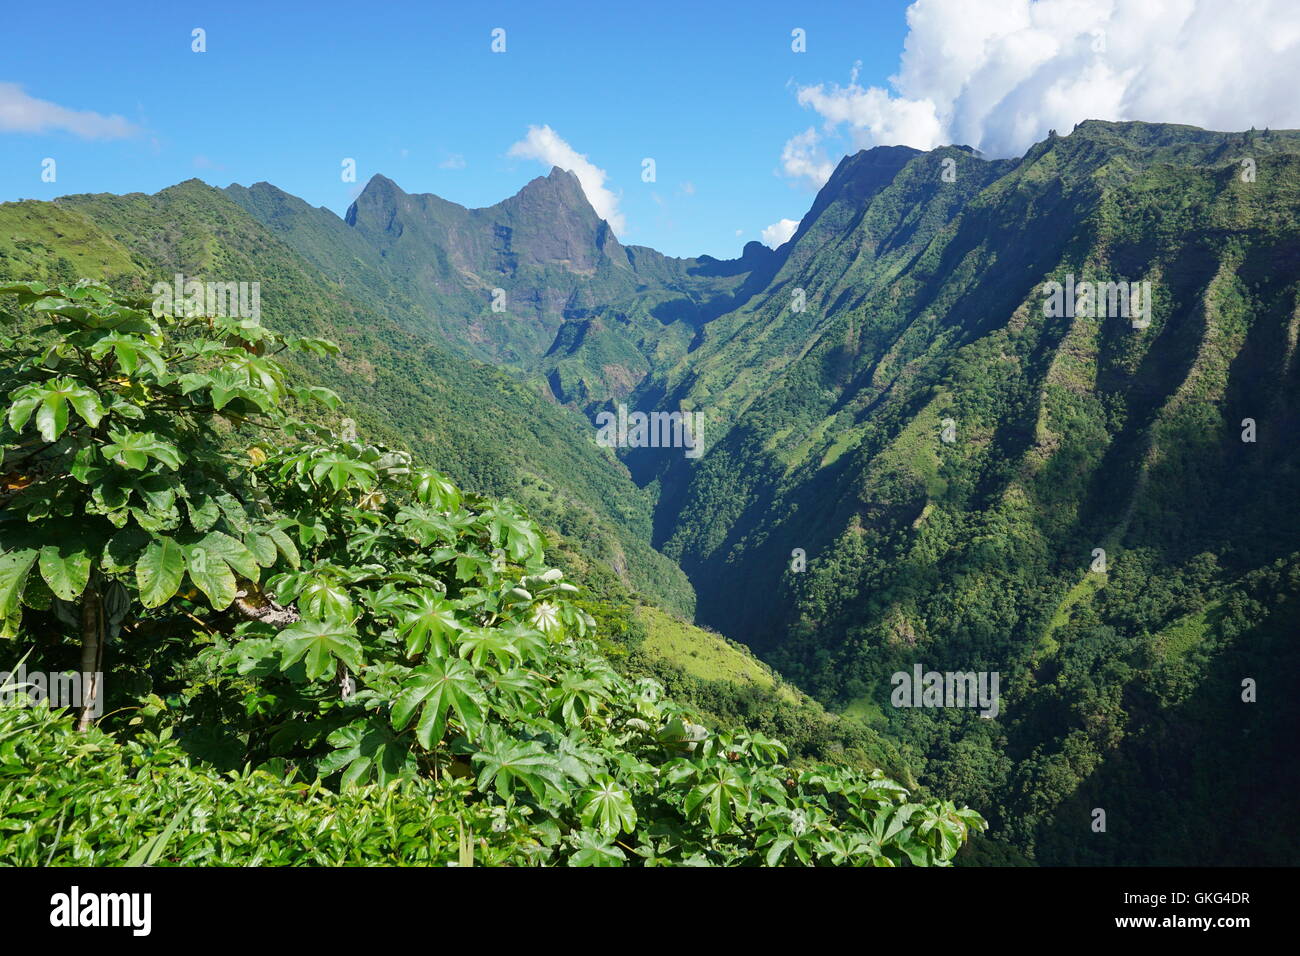 Tahiti, le paysage de montagne en vallée Tuauru Mahina avec le mont Orohena en arrière-plan, plus haut sommet de la Polynésie Française Banque D'Images